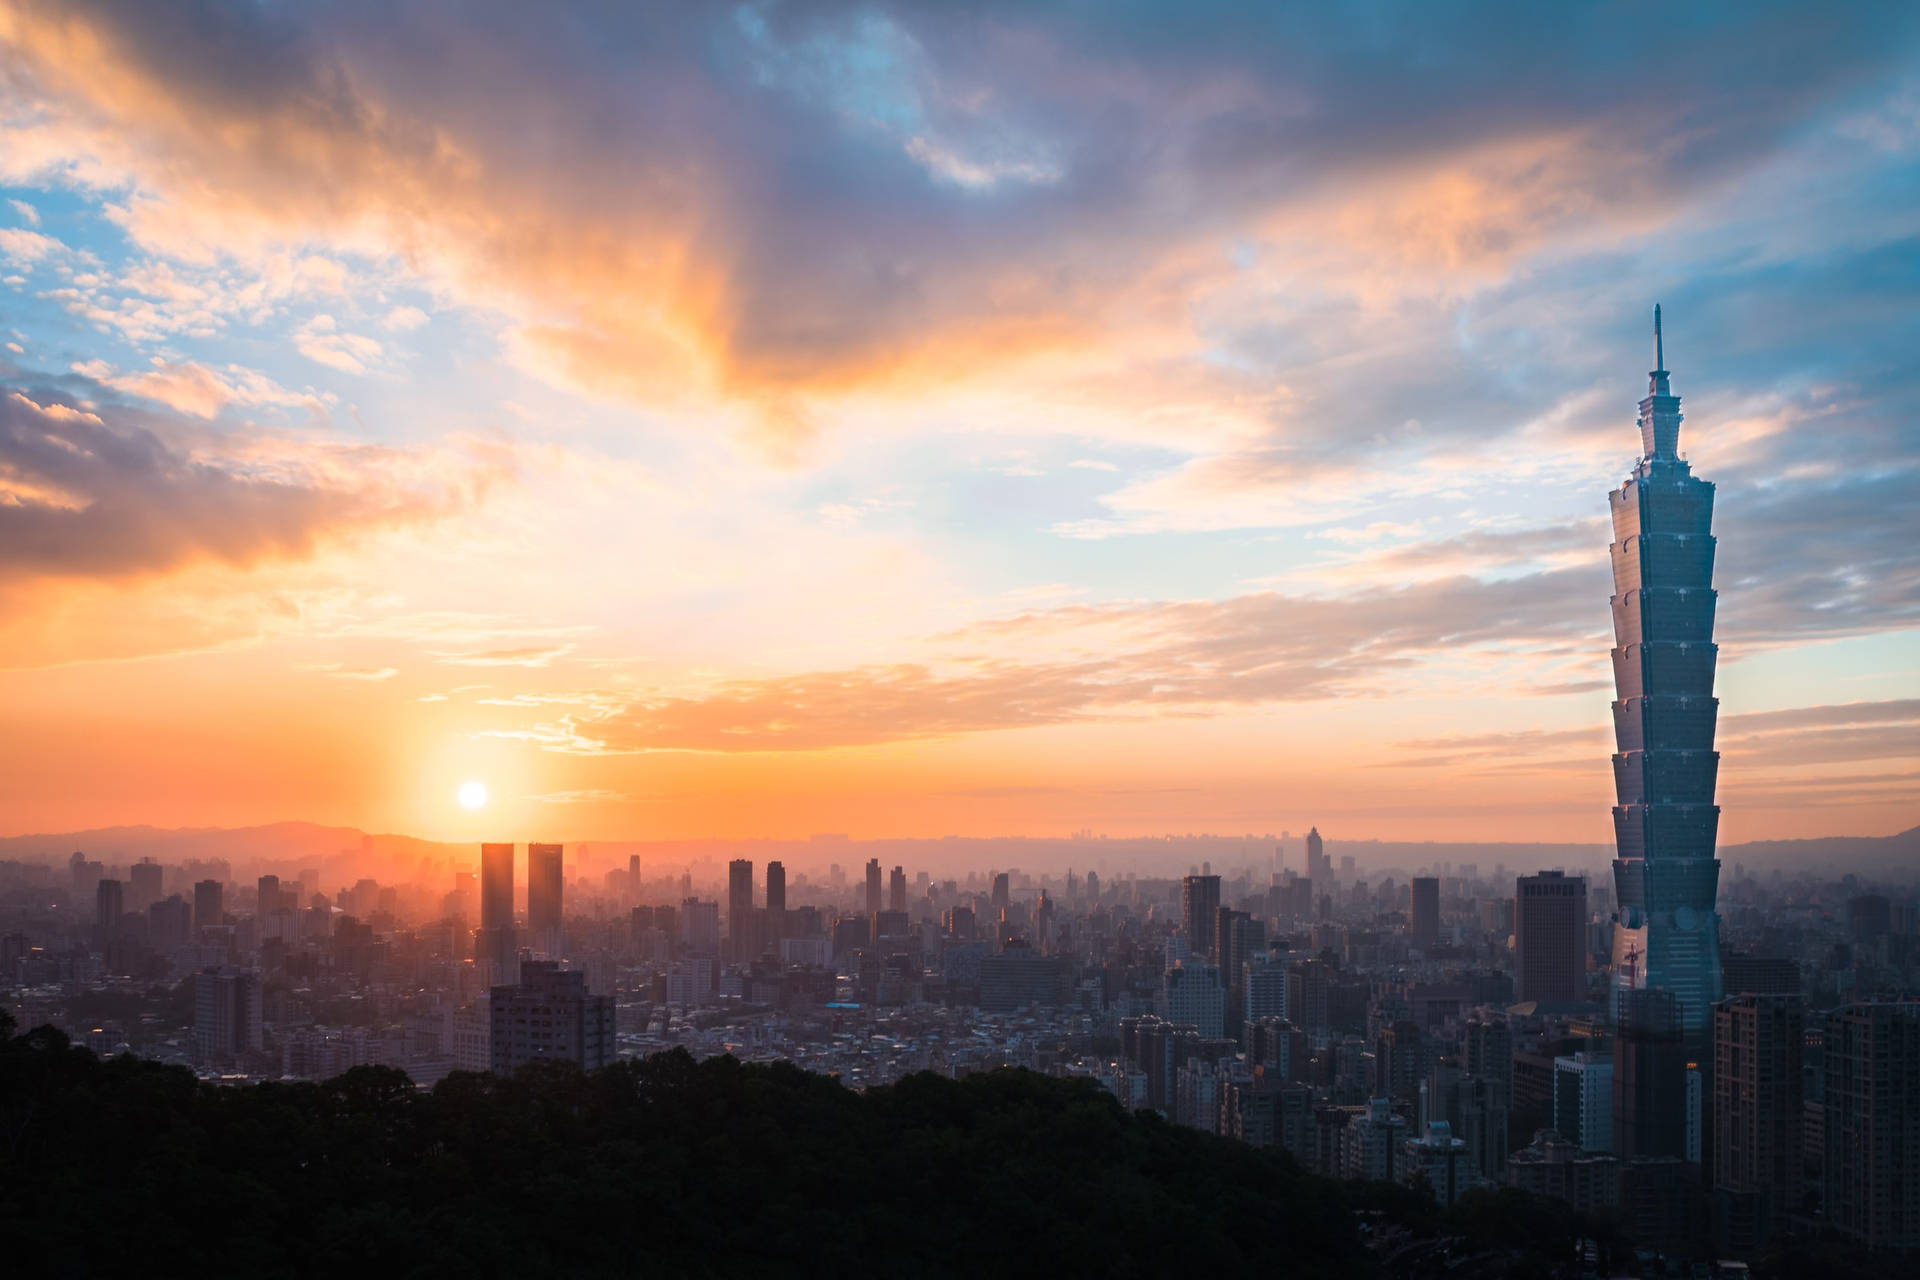 Taipeistadtlandschaft Bei Sonnenuntergang Wallpaper